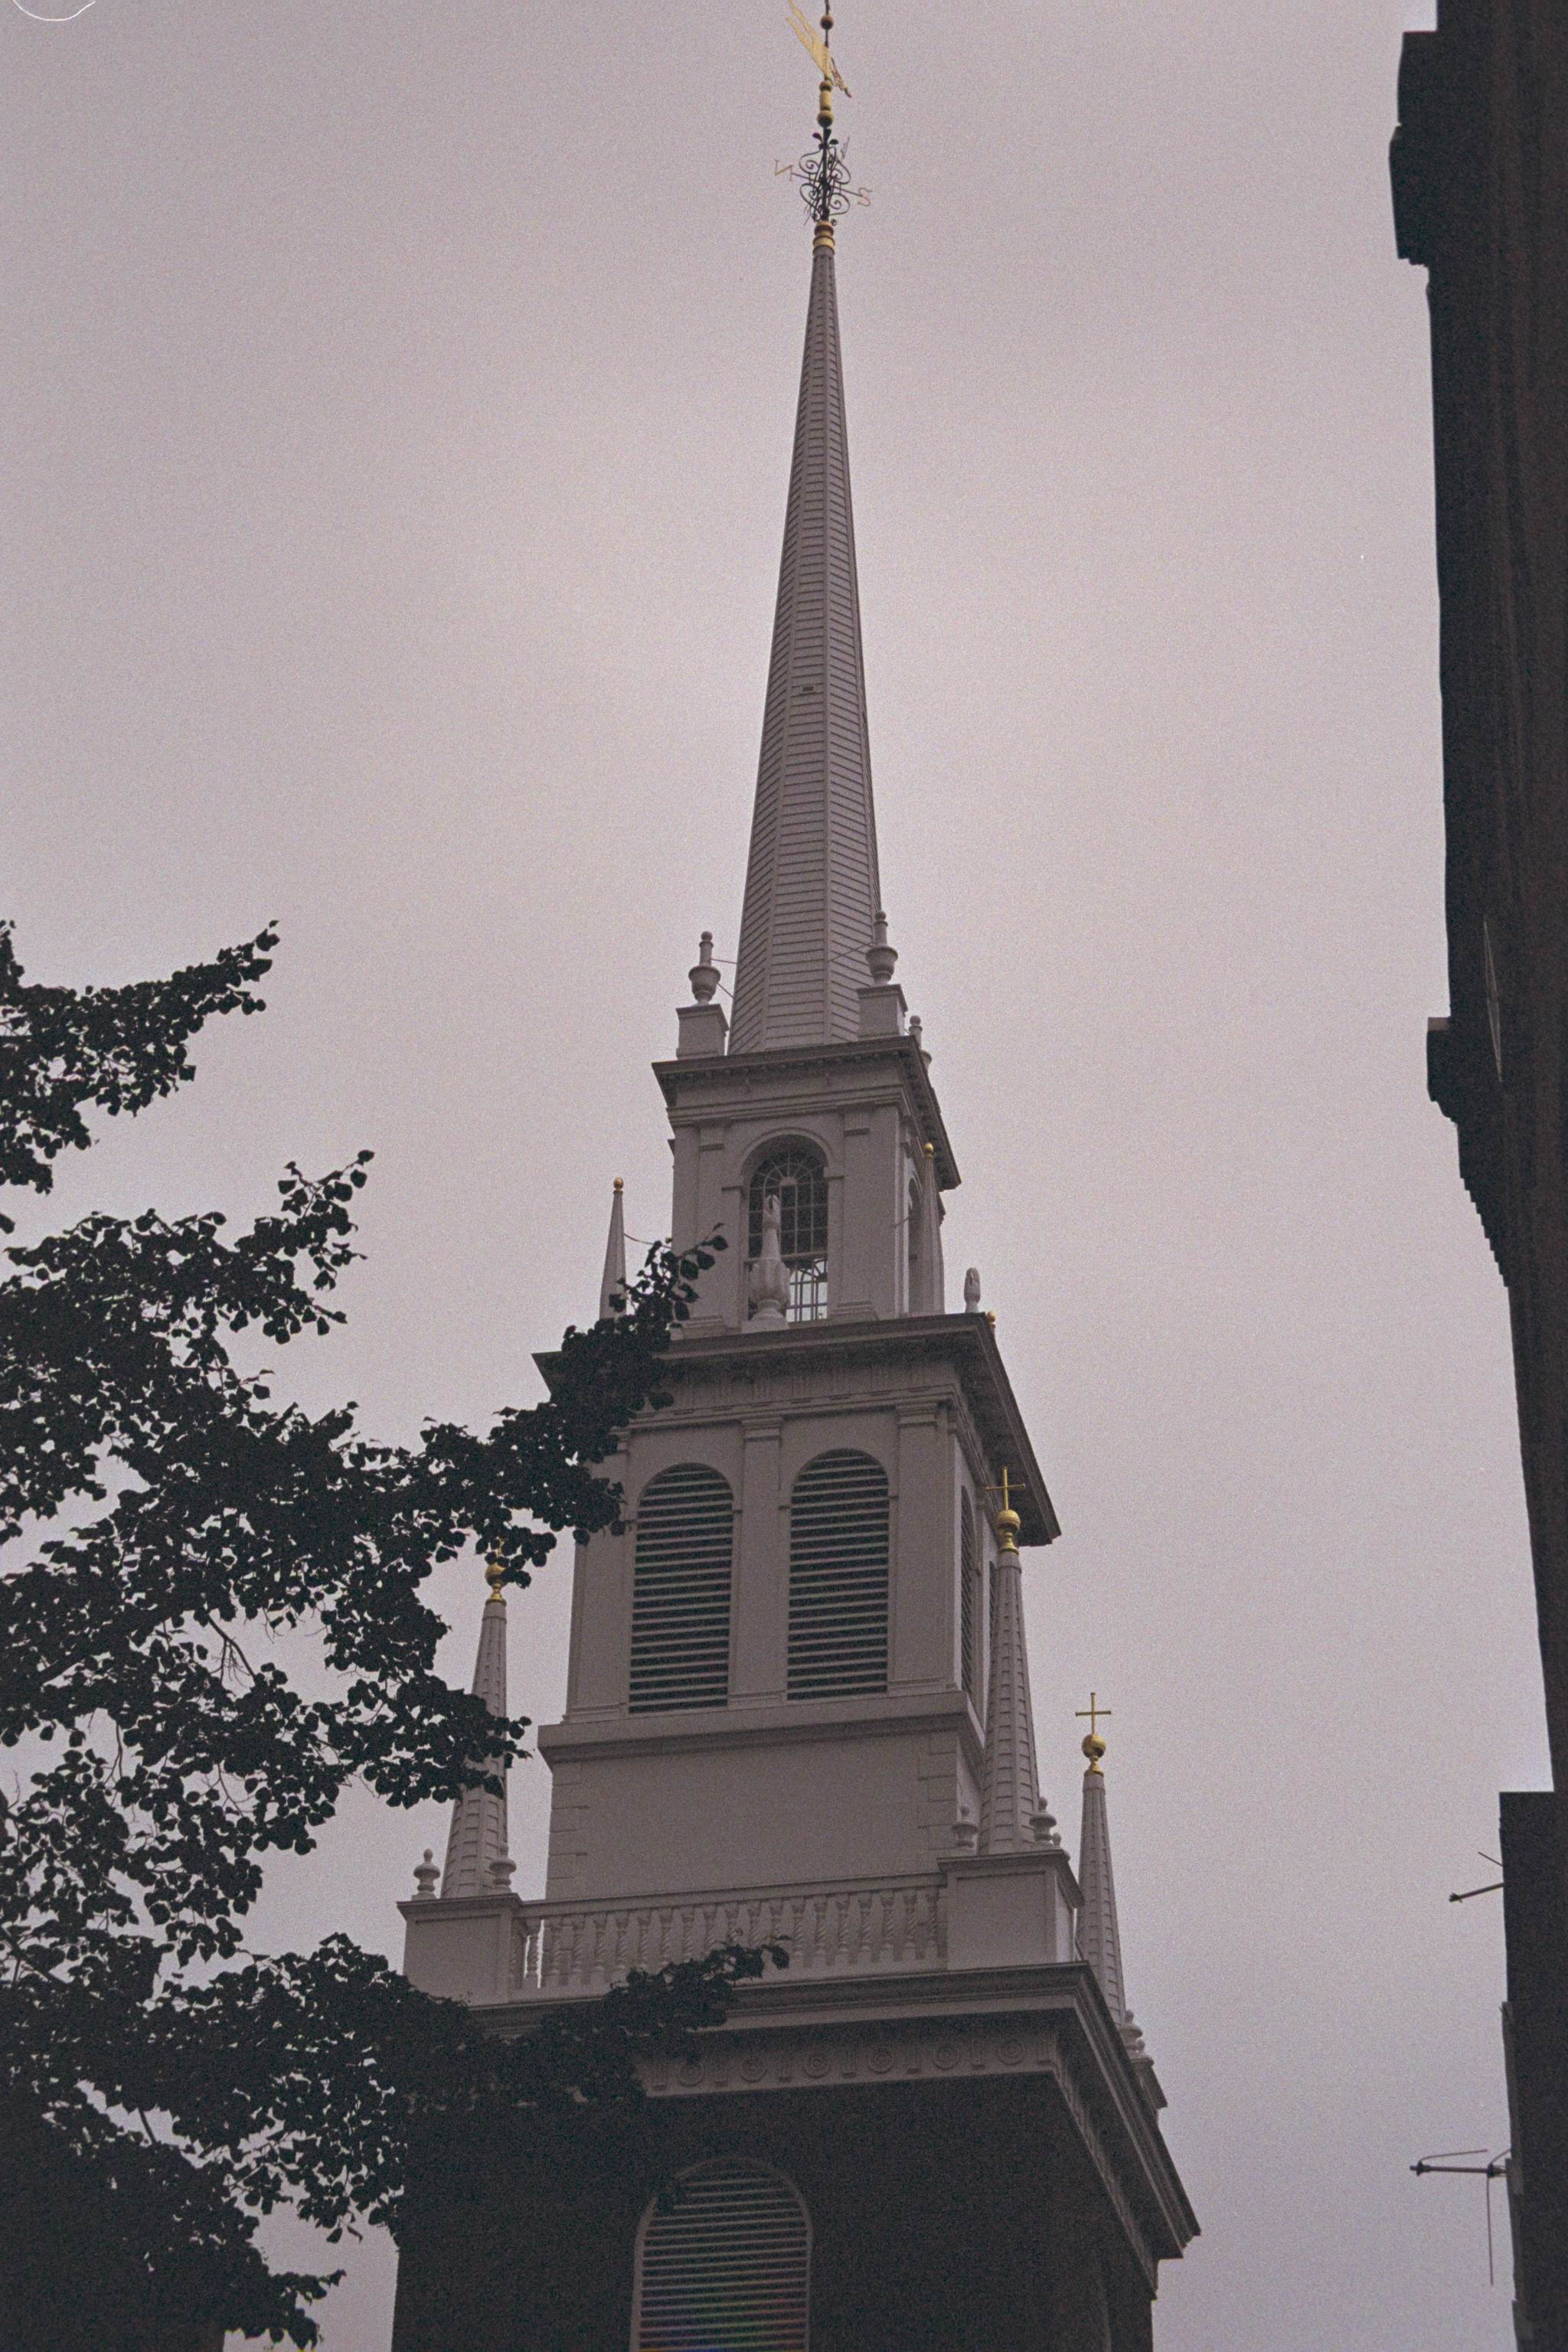 Old steeple photo